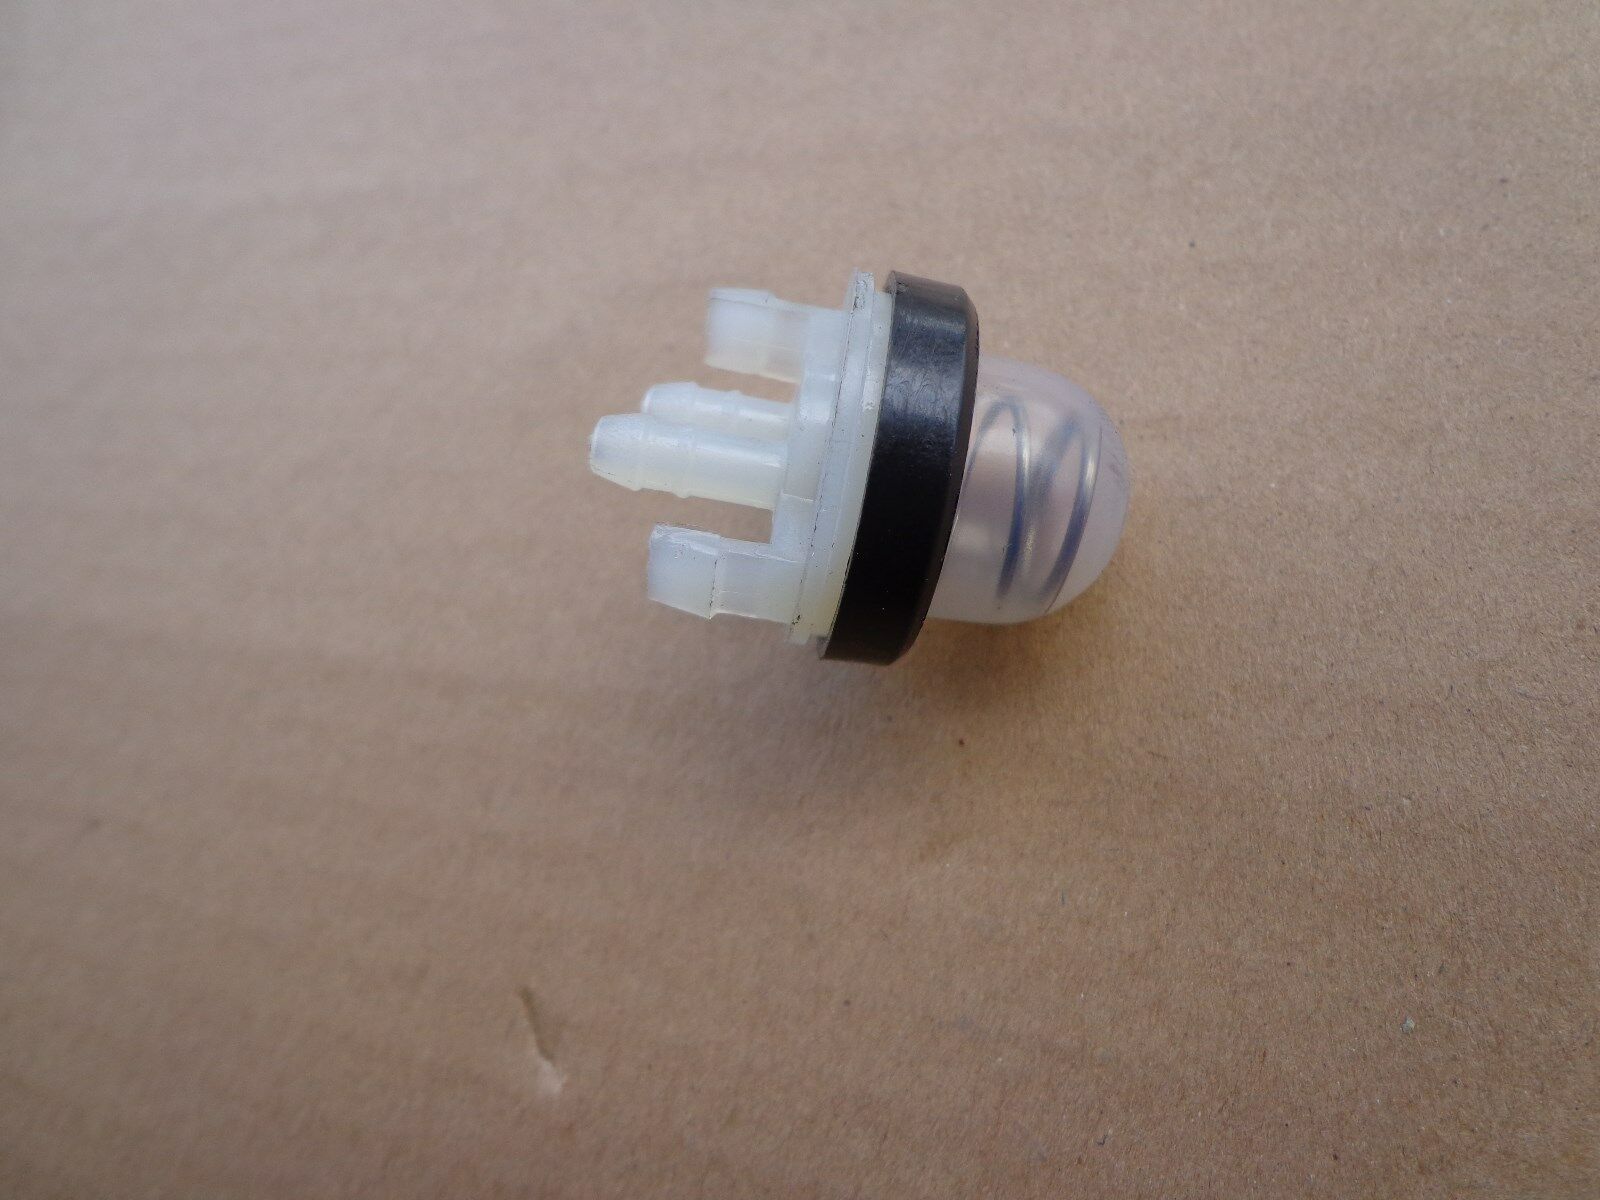 Stihl Ts410, Ts420 Primer Bulb Replaces 4238-350-6201